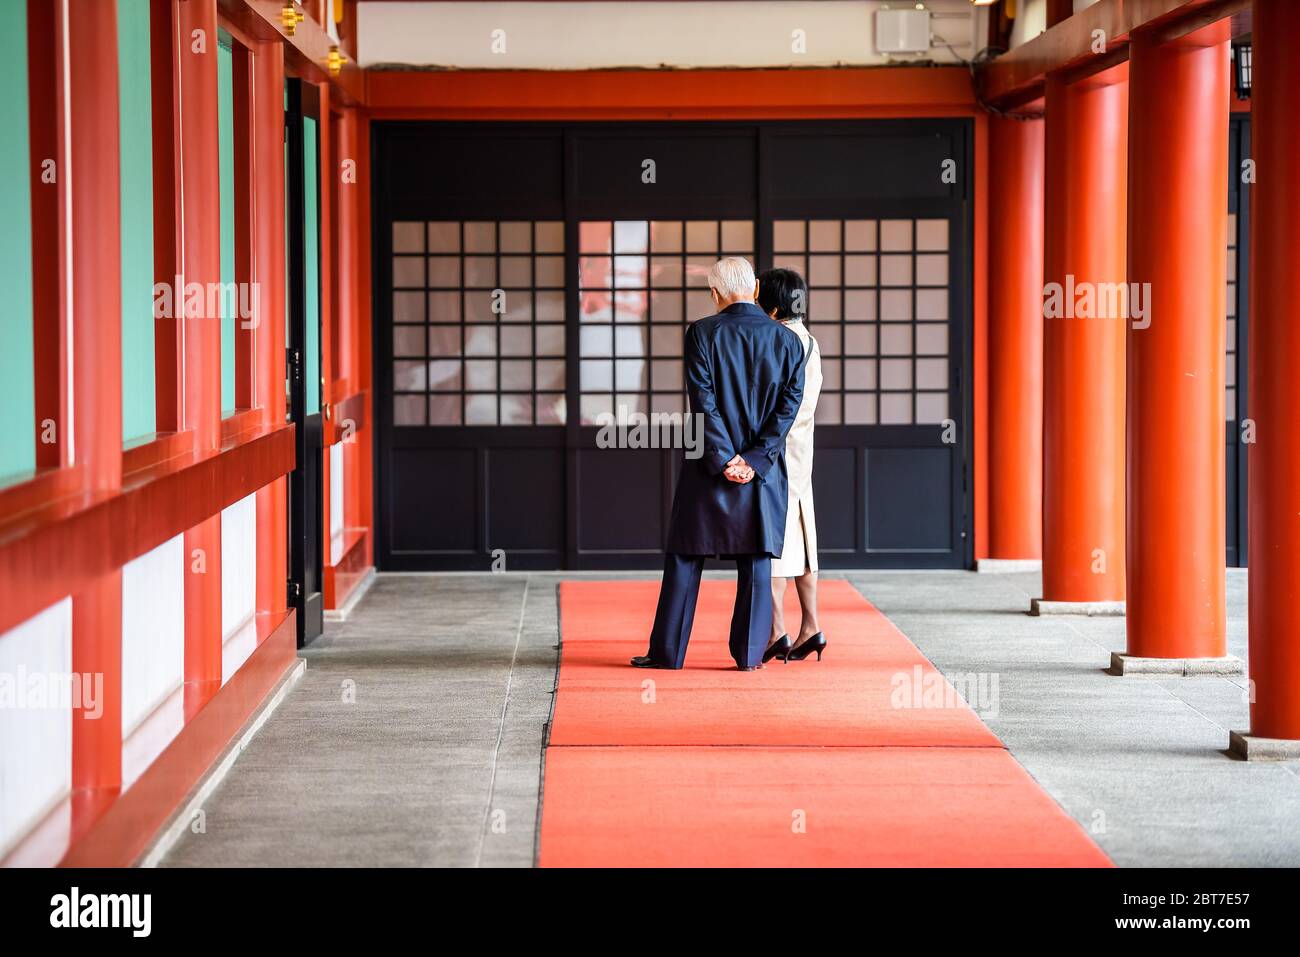 Tokio, Japan - 30. März 2019: Korridor Passage Halle des Hie Schrein mit Menschen Touristen Blick auf rot bunte Architektur durch Hof Stockfoto